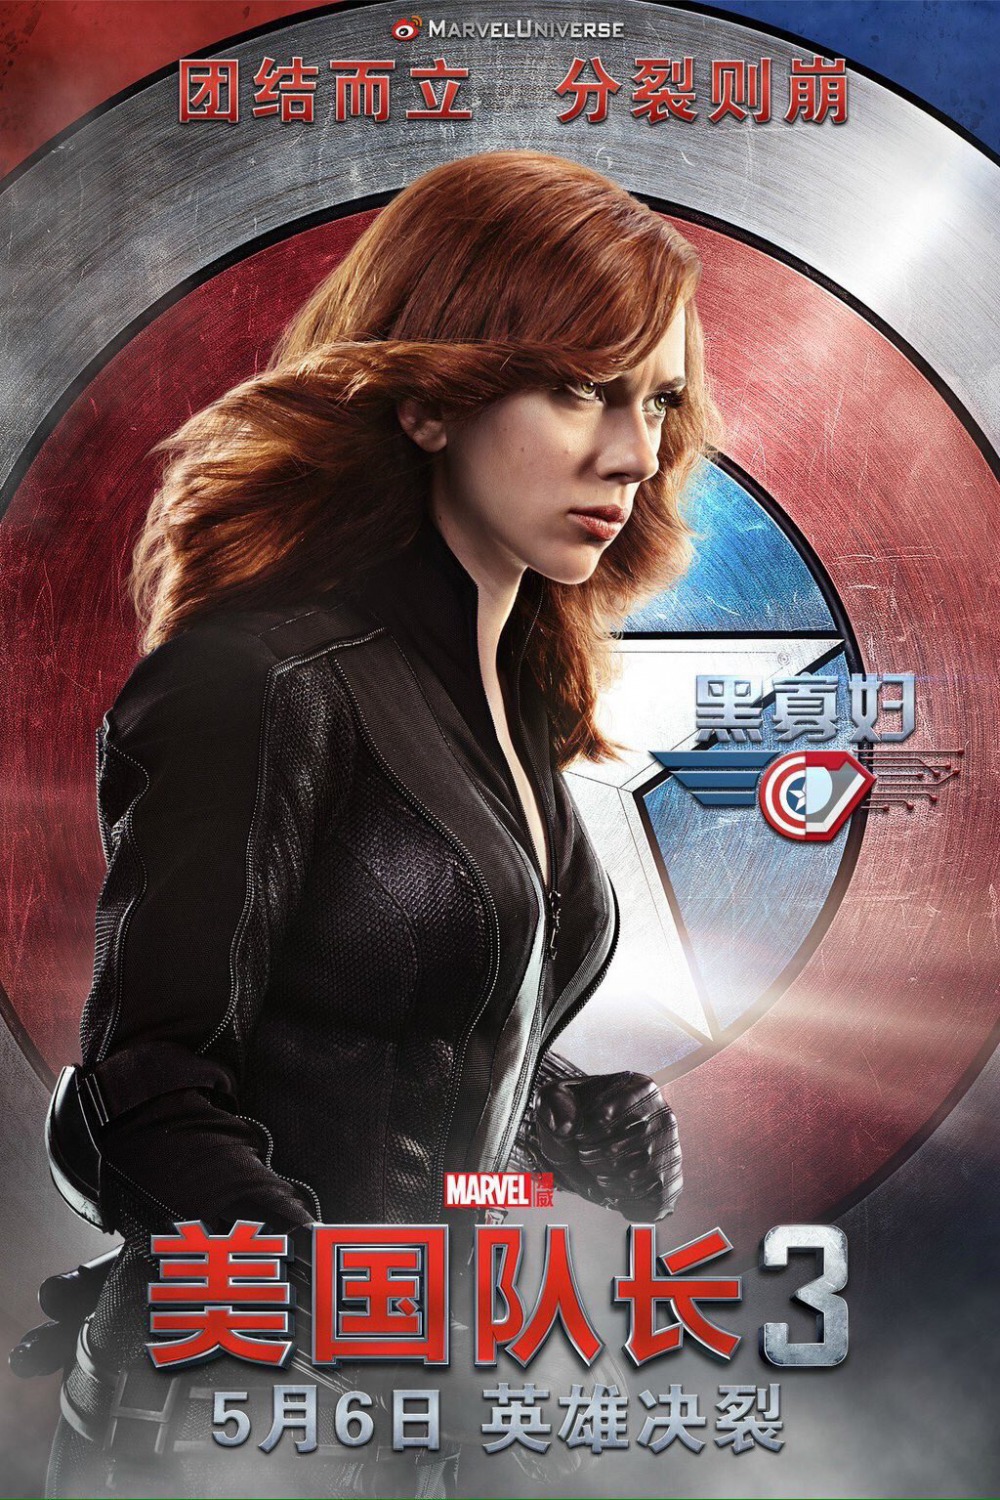 Captain America: Civil War DVD Release Date | Redbox ...